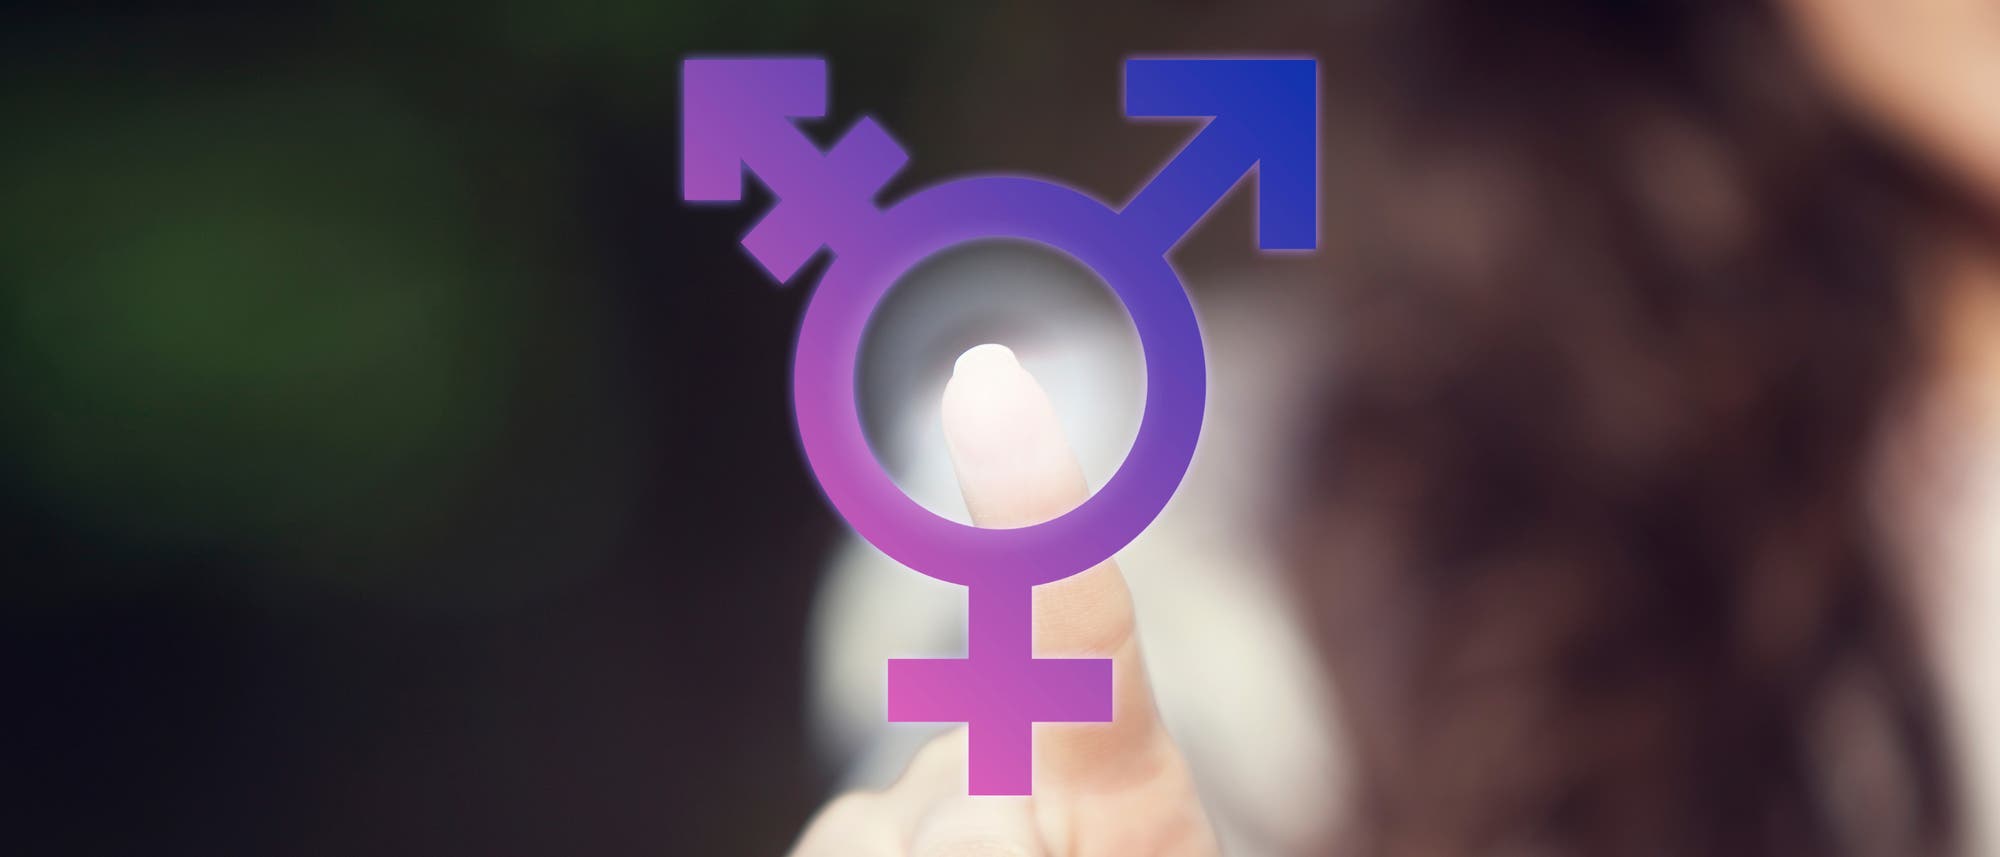 Das Symbol für Transgender.